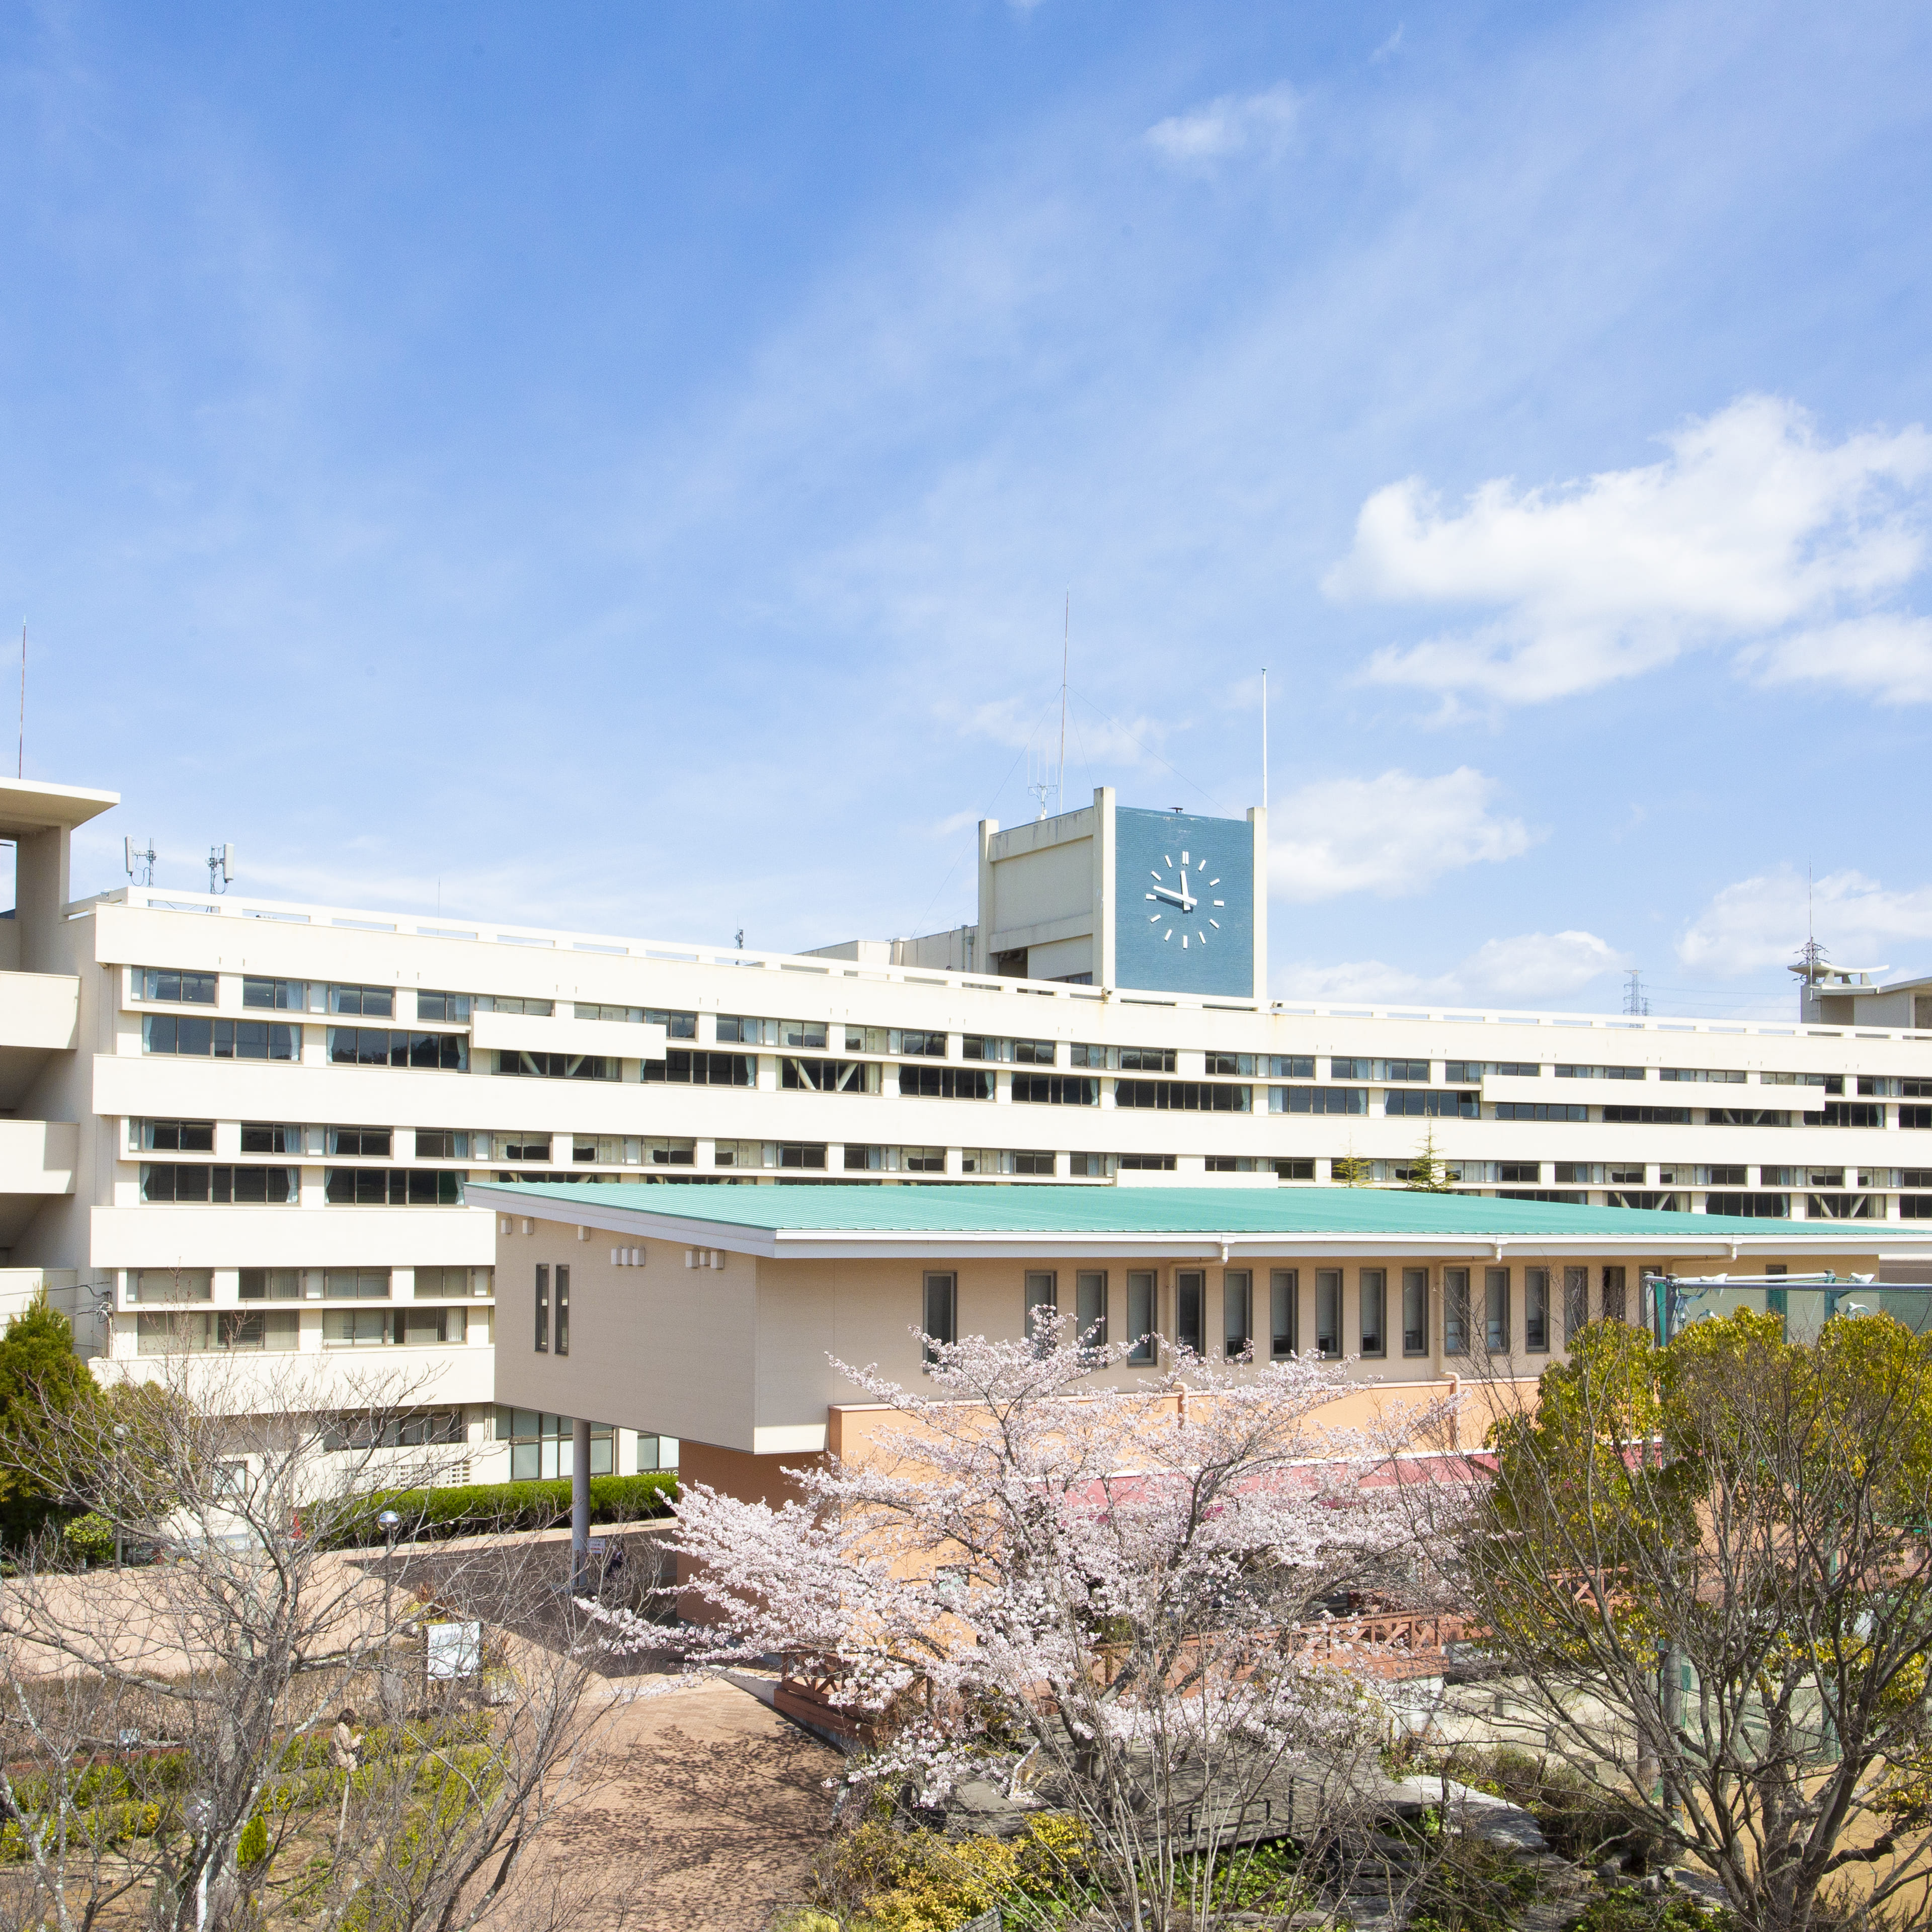 神戸親和大学のオープンキャンパス